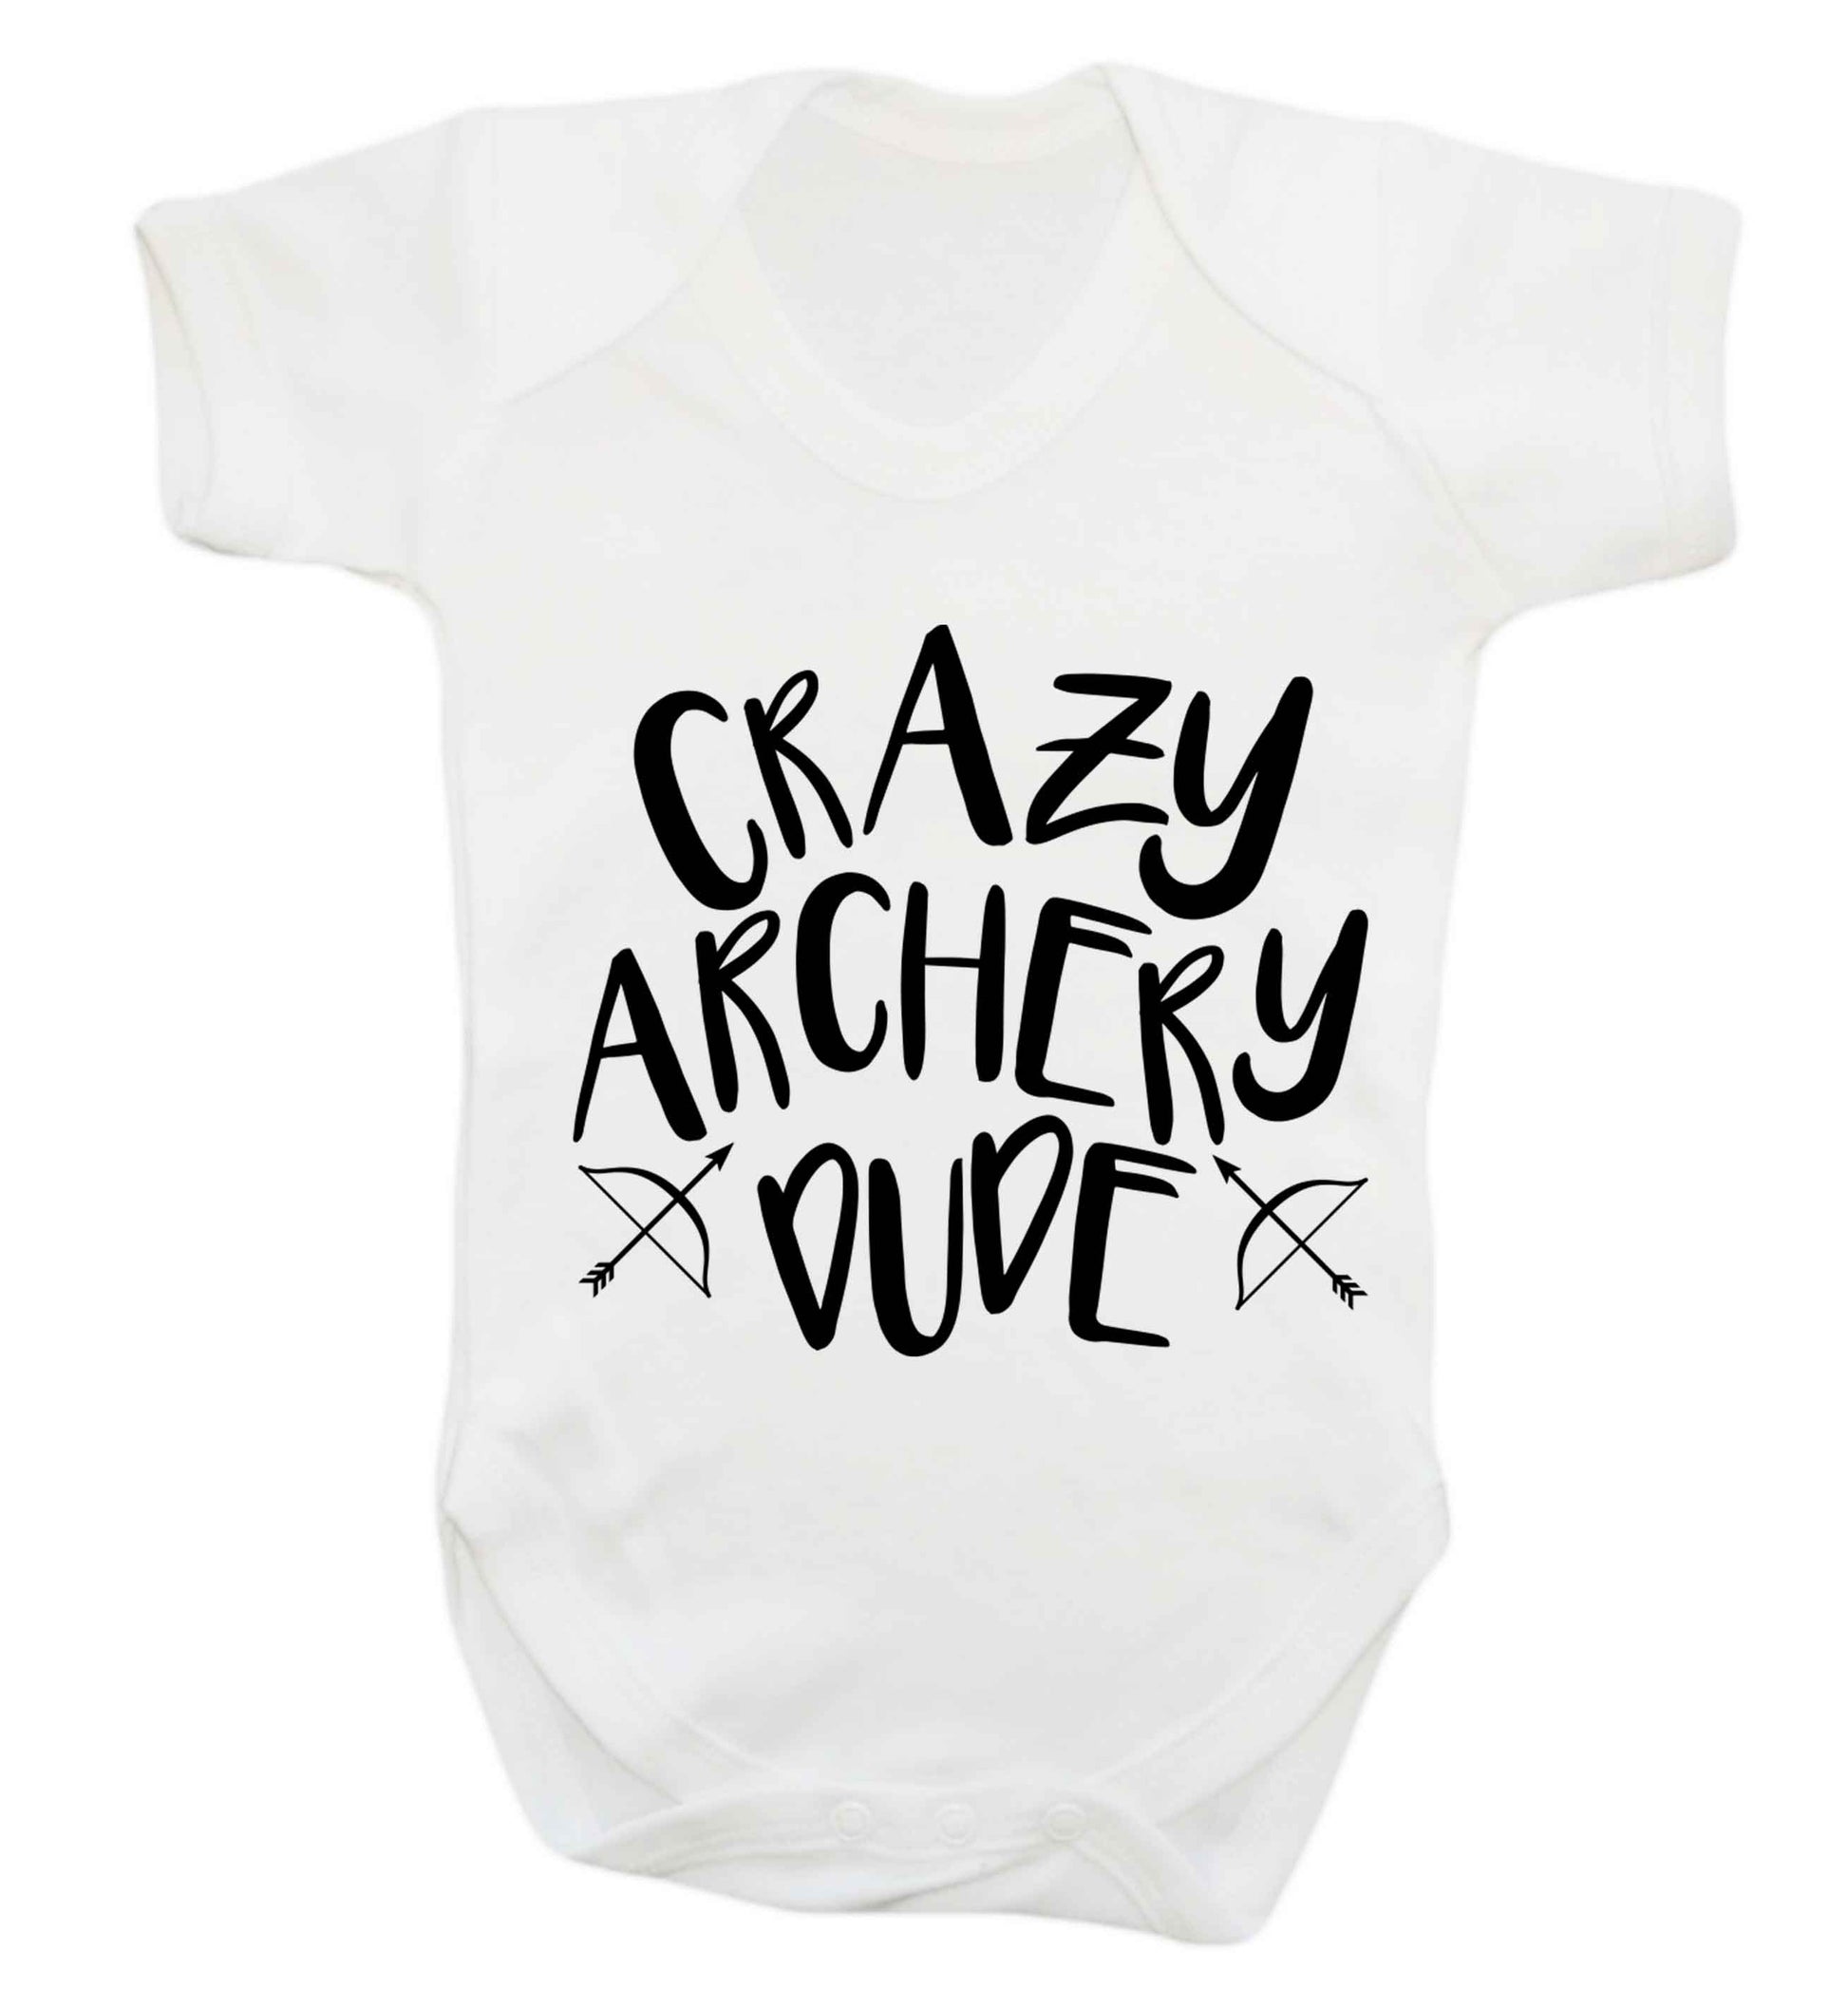 Crazy archery dude Baby Vest white 18-24 months